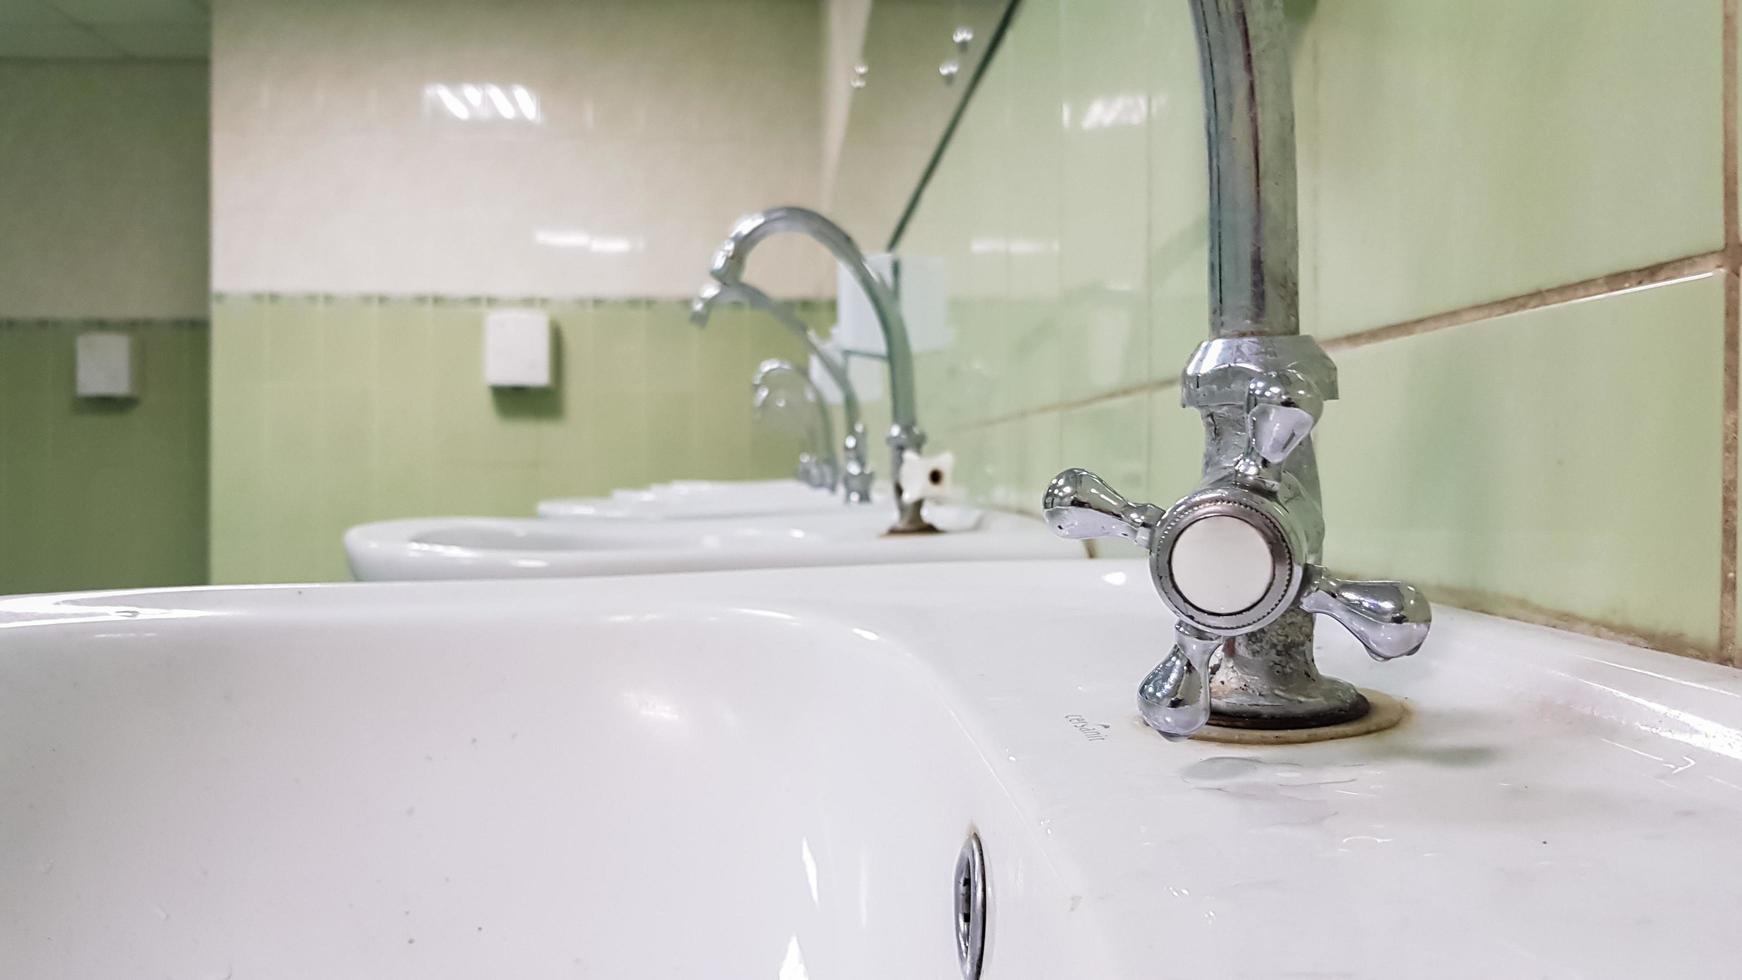 Grifo viejo y sucio y lavabo de cerámica blanca, concepto de limpieza, reparación o reemplazo de un baño, inodoro. foto